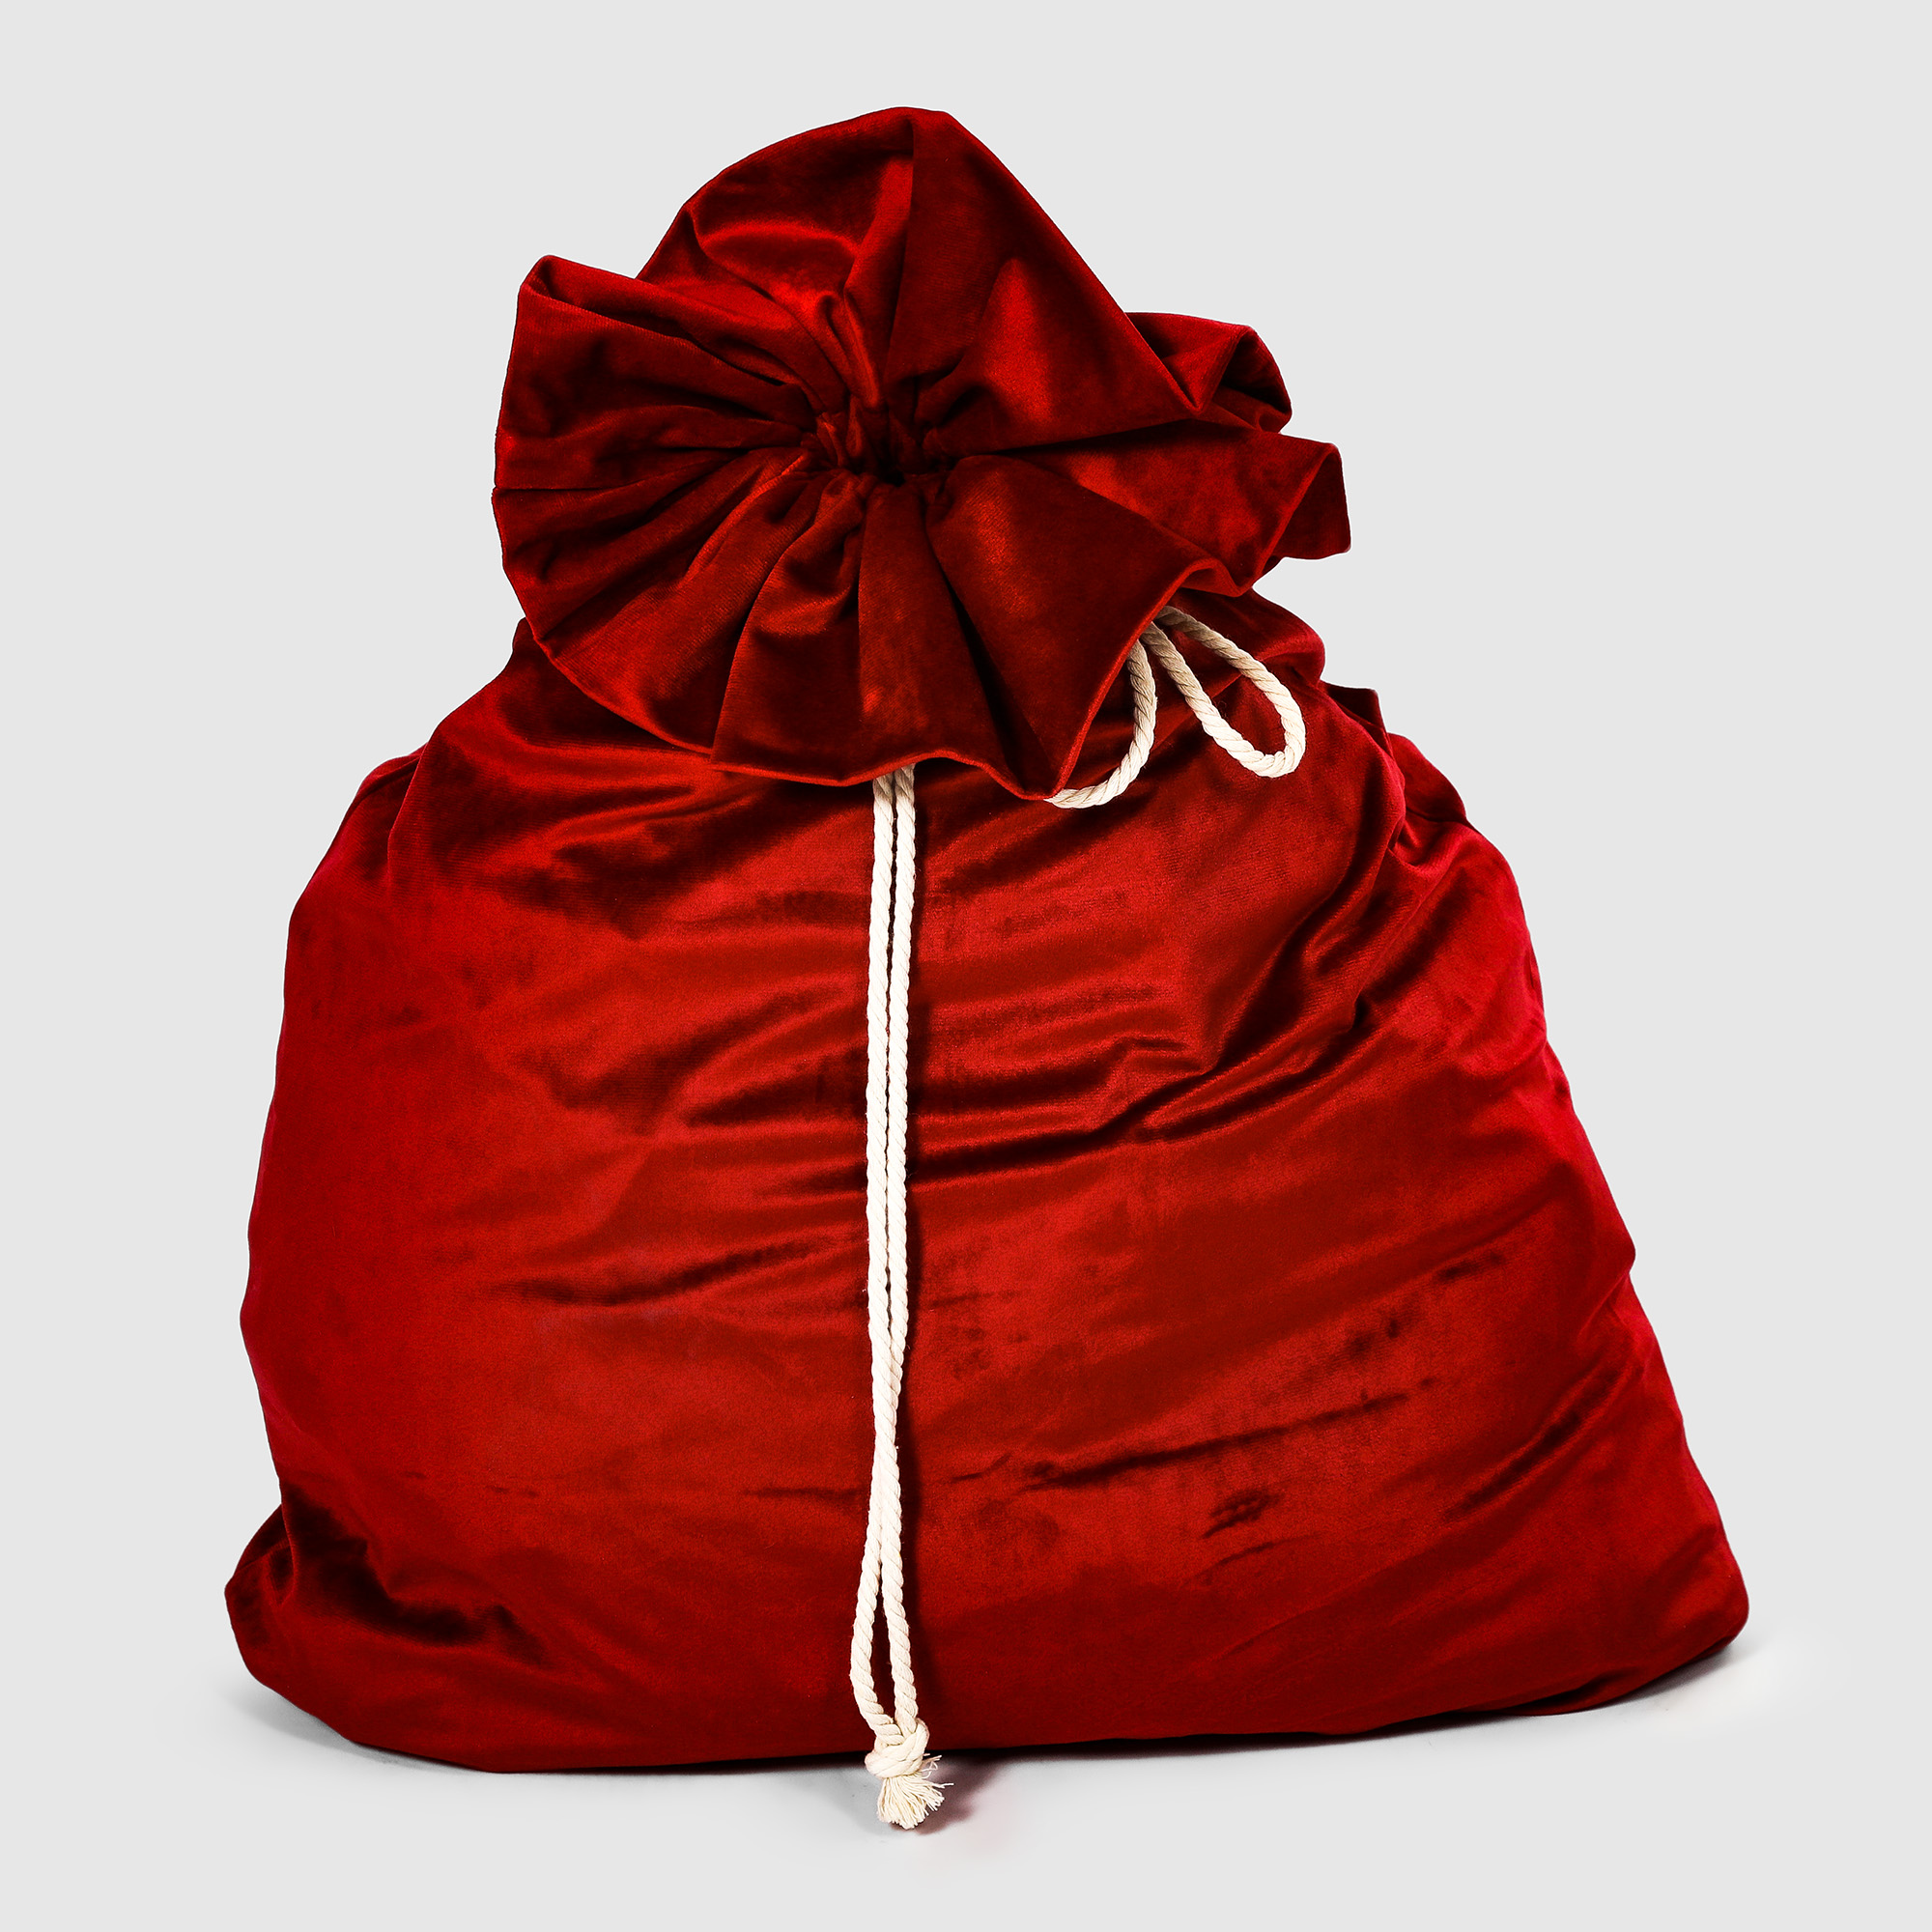 Мешок для подарков Bizzotto ny красный 60x100 см кресло мешок оксфорд красный 2xl